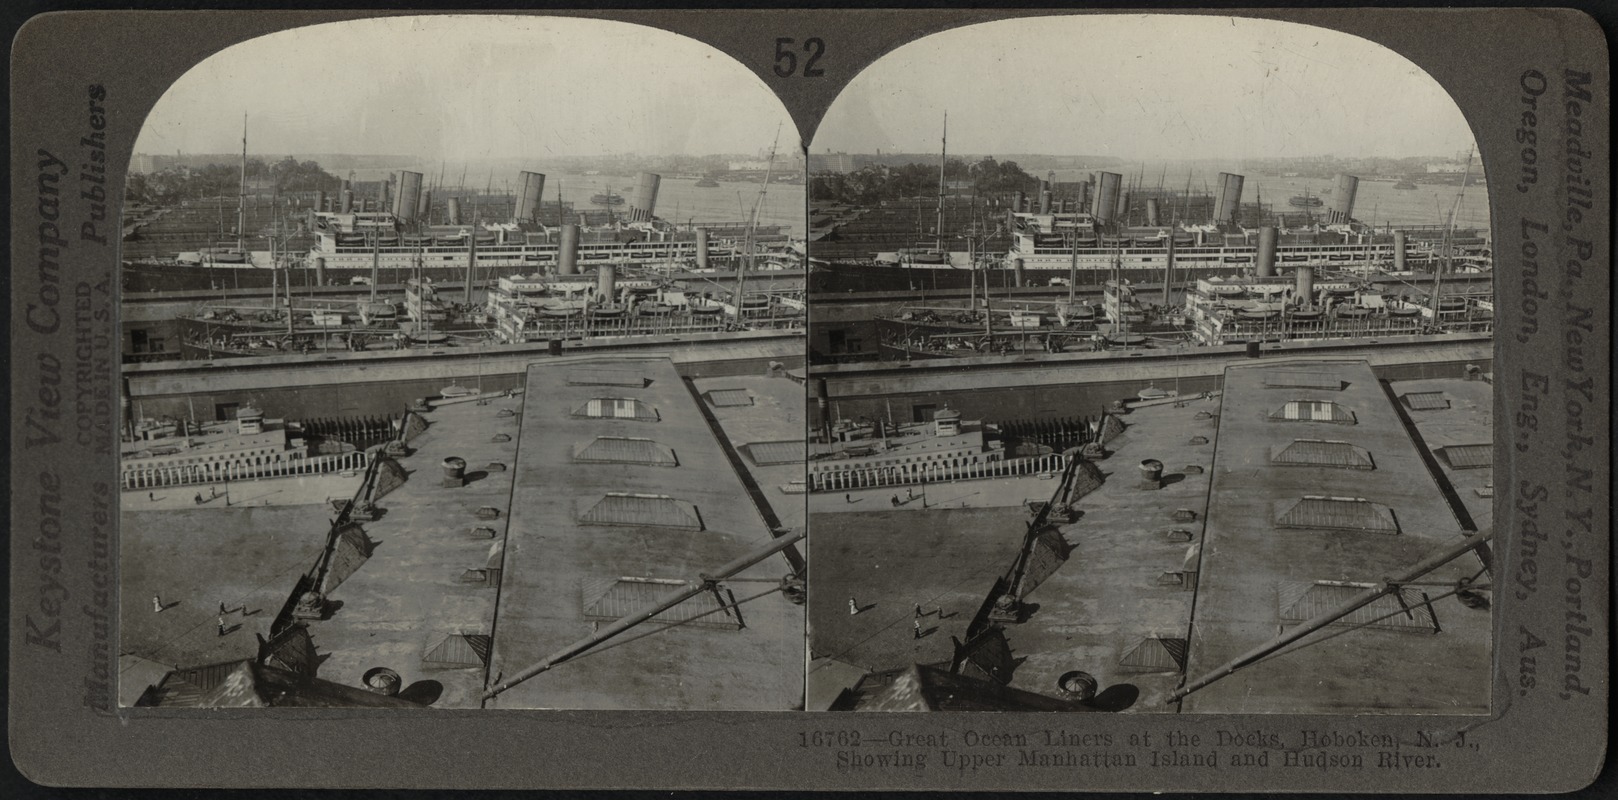 Great ocean liners at the docks, Hoboken, N.J.